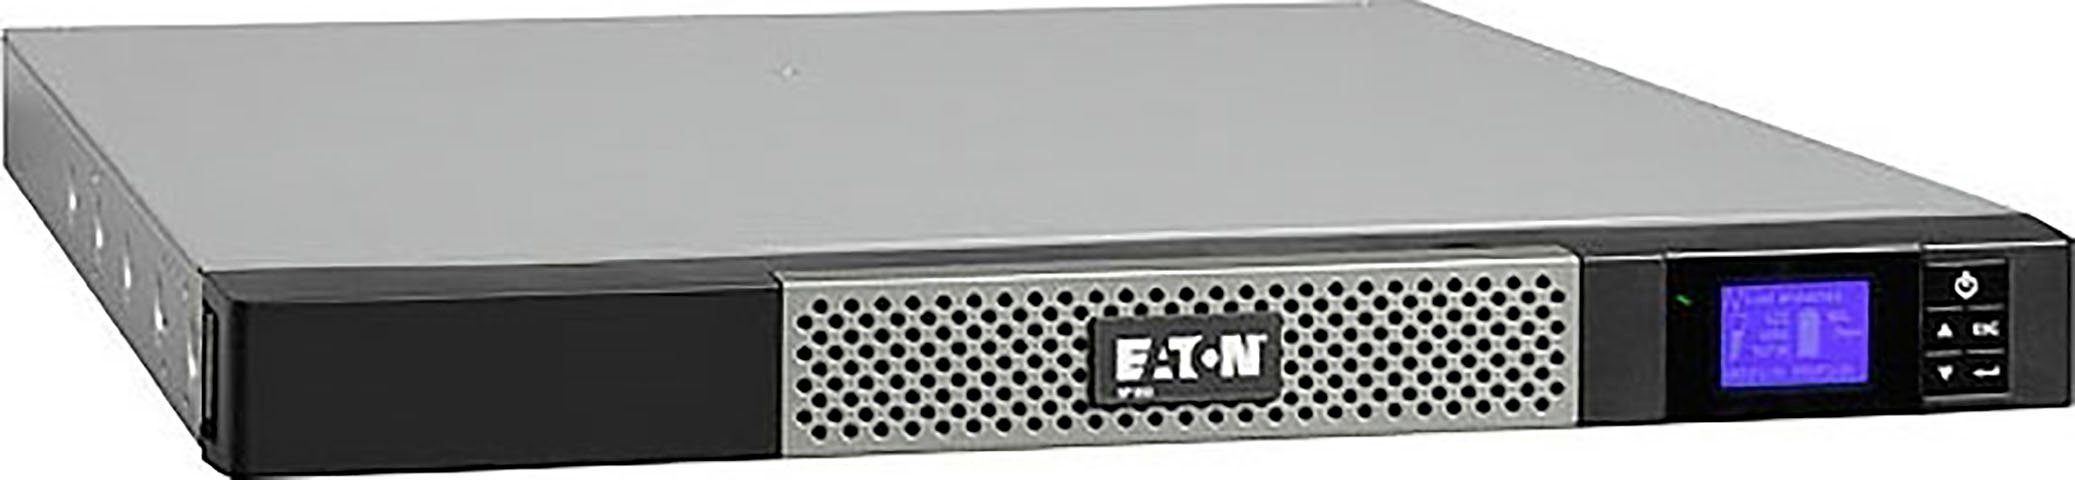 EATON USV-Anlage 5P 850i 850VA/600W Rack 1U